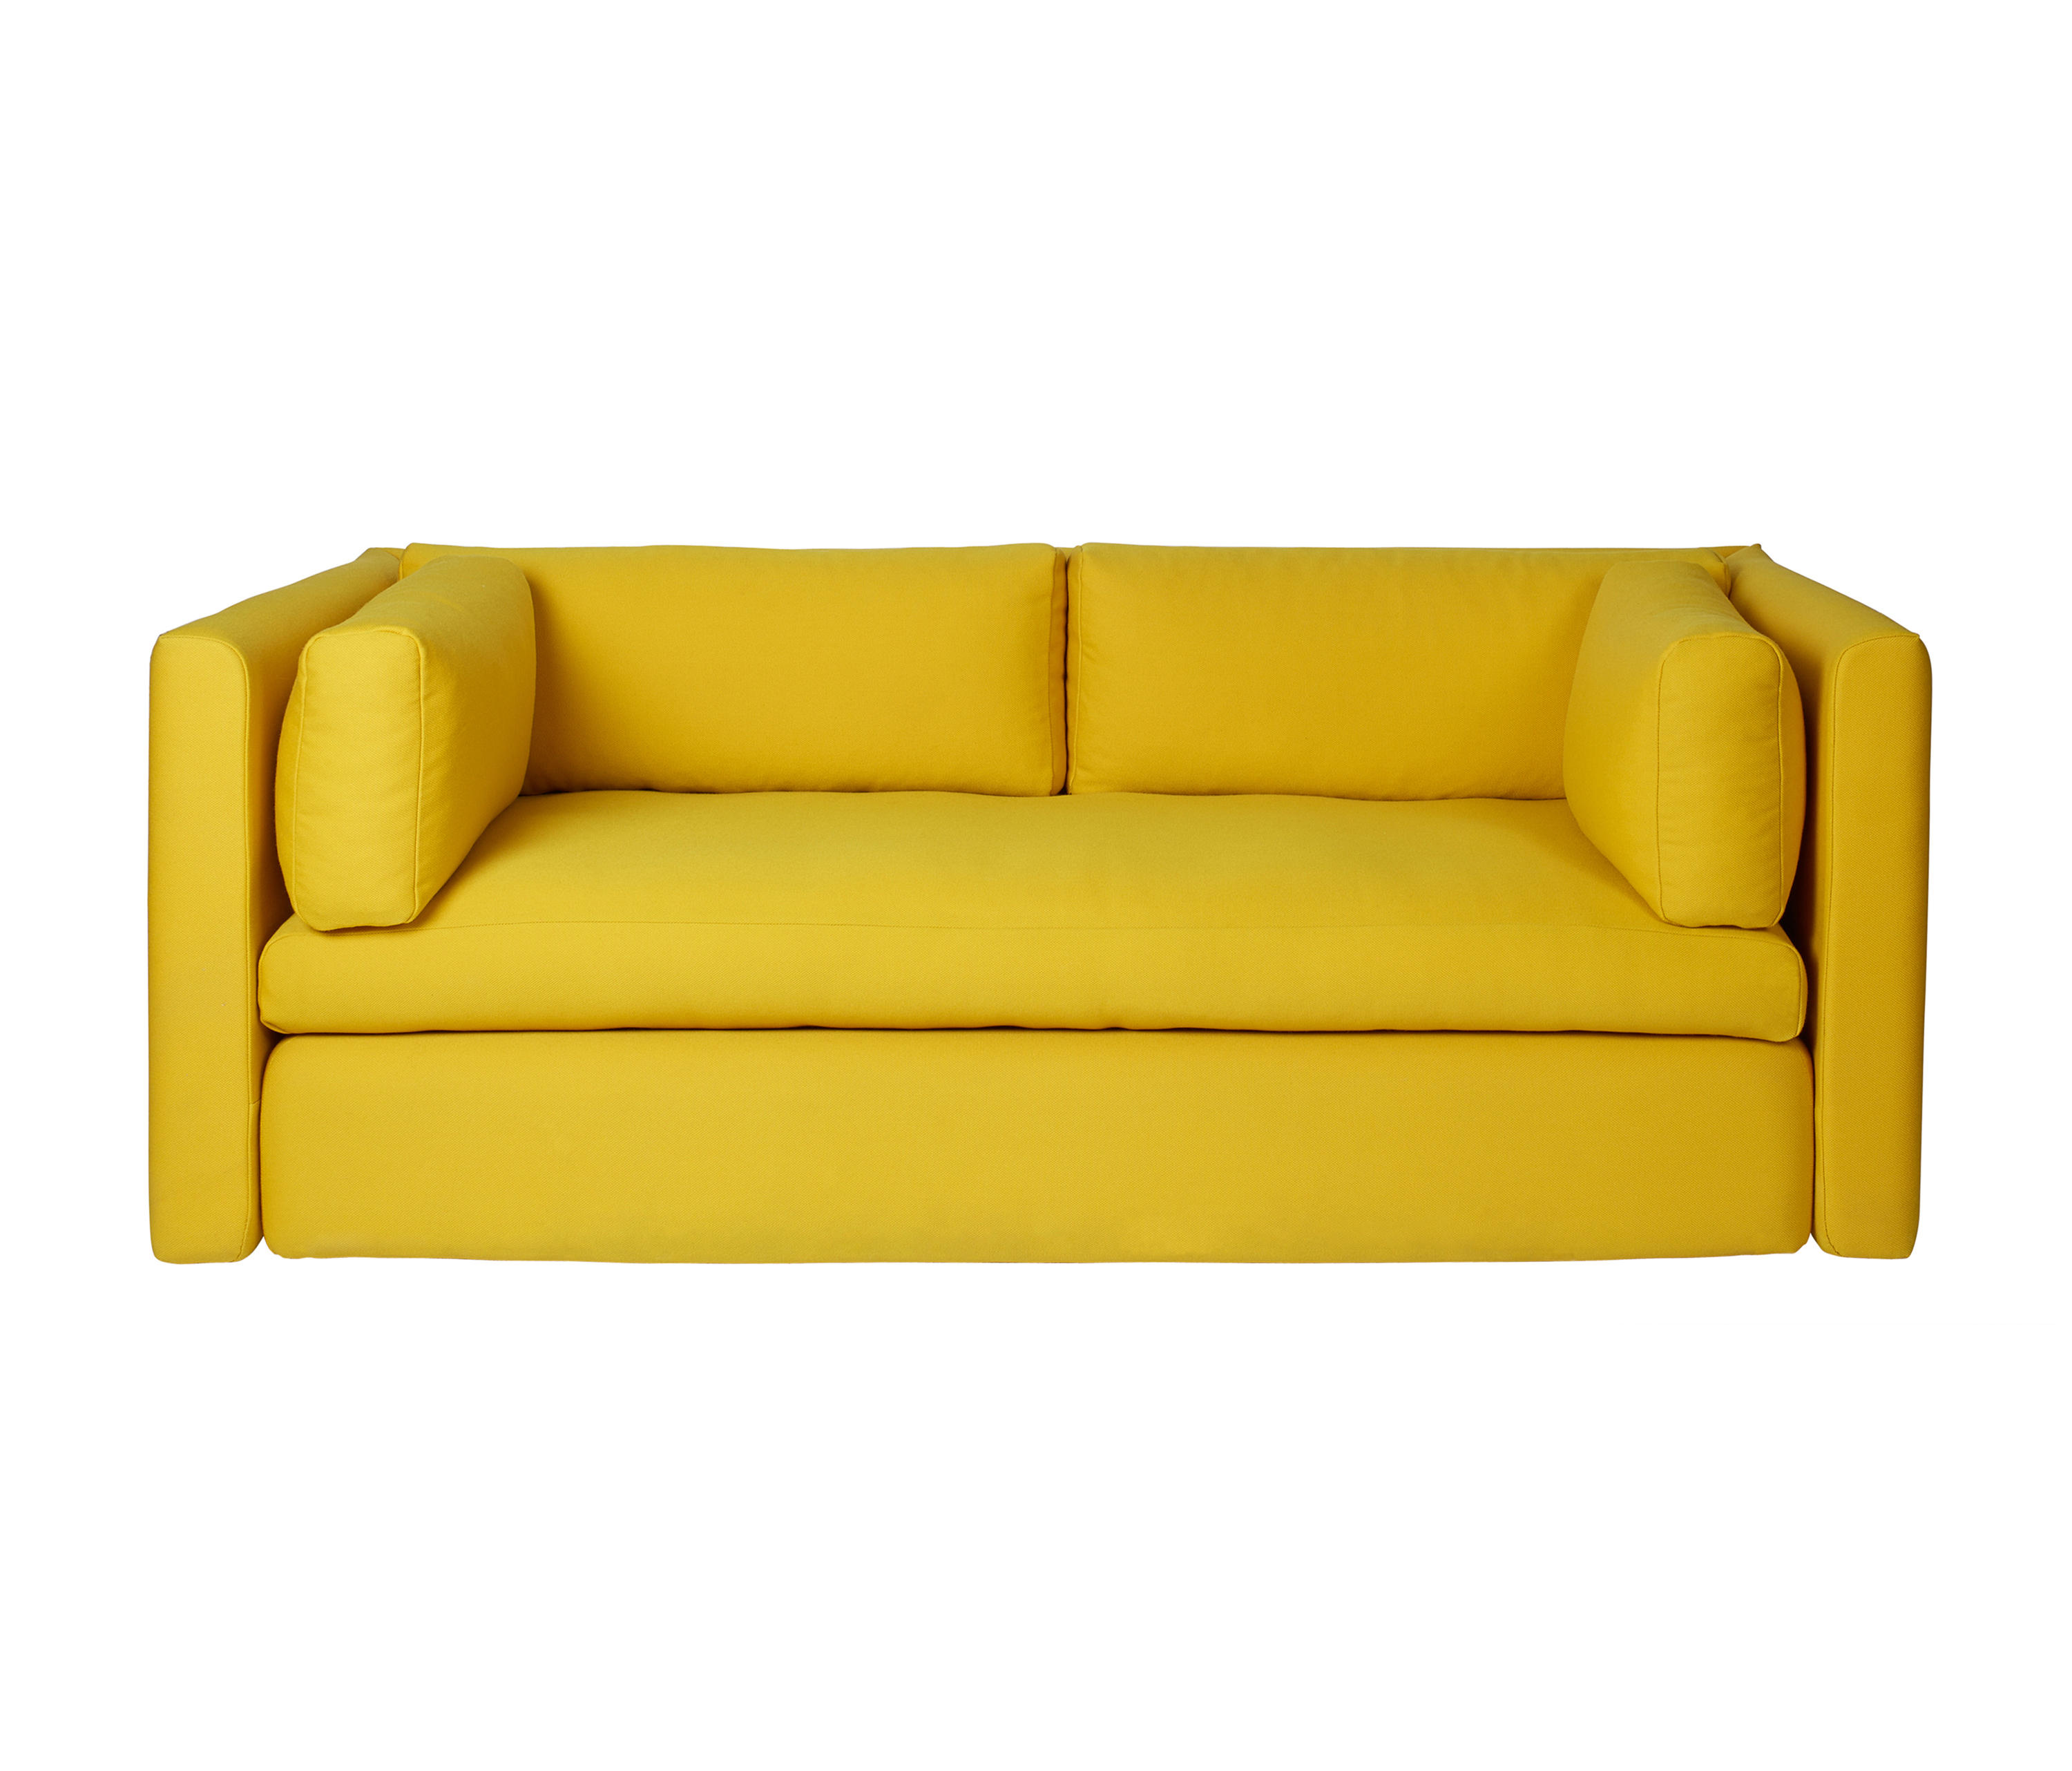 Fælles valg backup dø Hackney 2 seater & designer furniture | Architonic